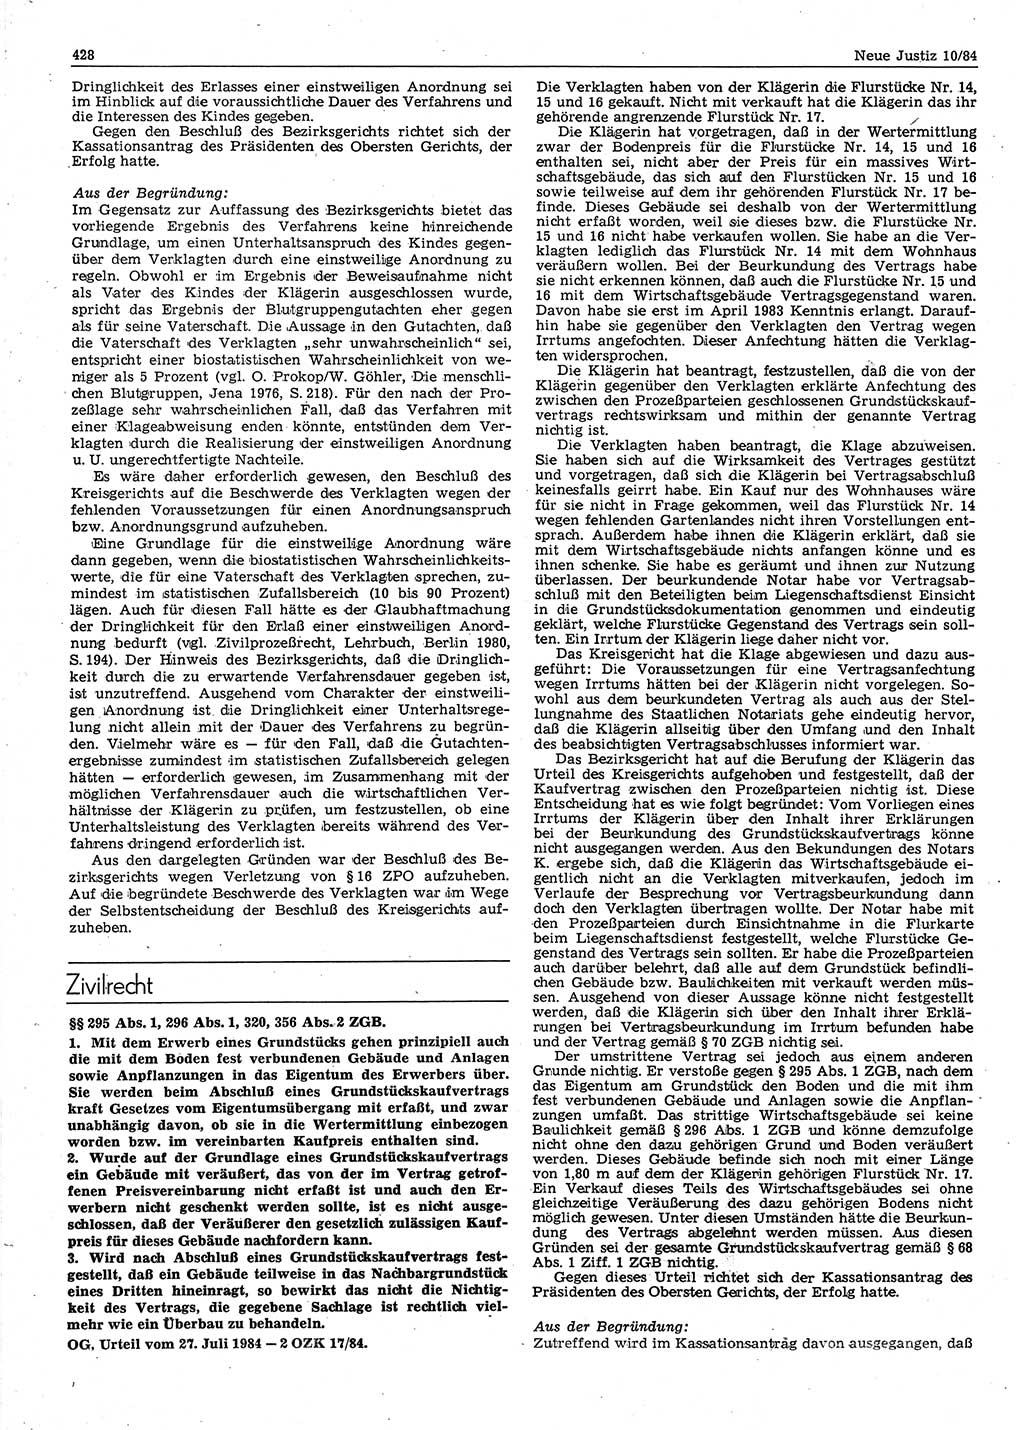 Neue Justiz (NJ), Zeitschrift für sozialistisches Recht und Gesetzlichkeit [Deutsche Demokratische Republik (DDR)], 38. Jahrgang 1984, Seite 428 (NJ DDR 1984, S. 428)